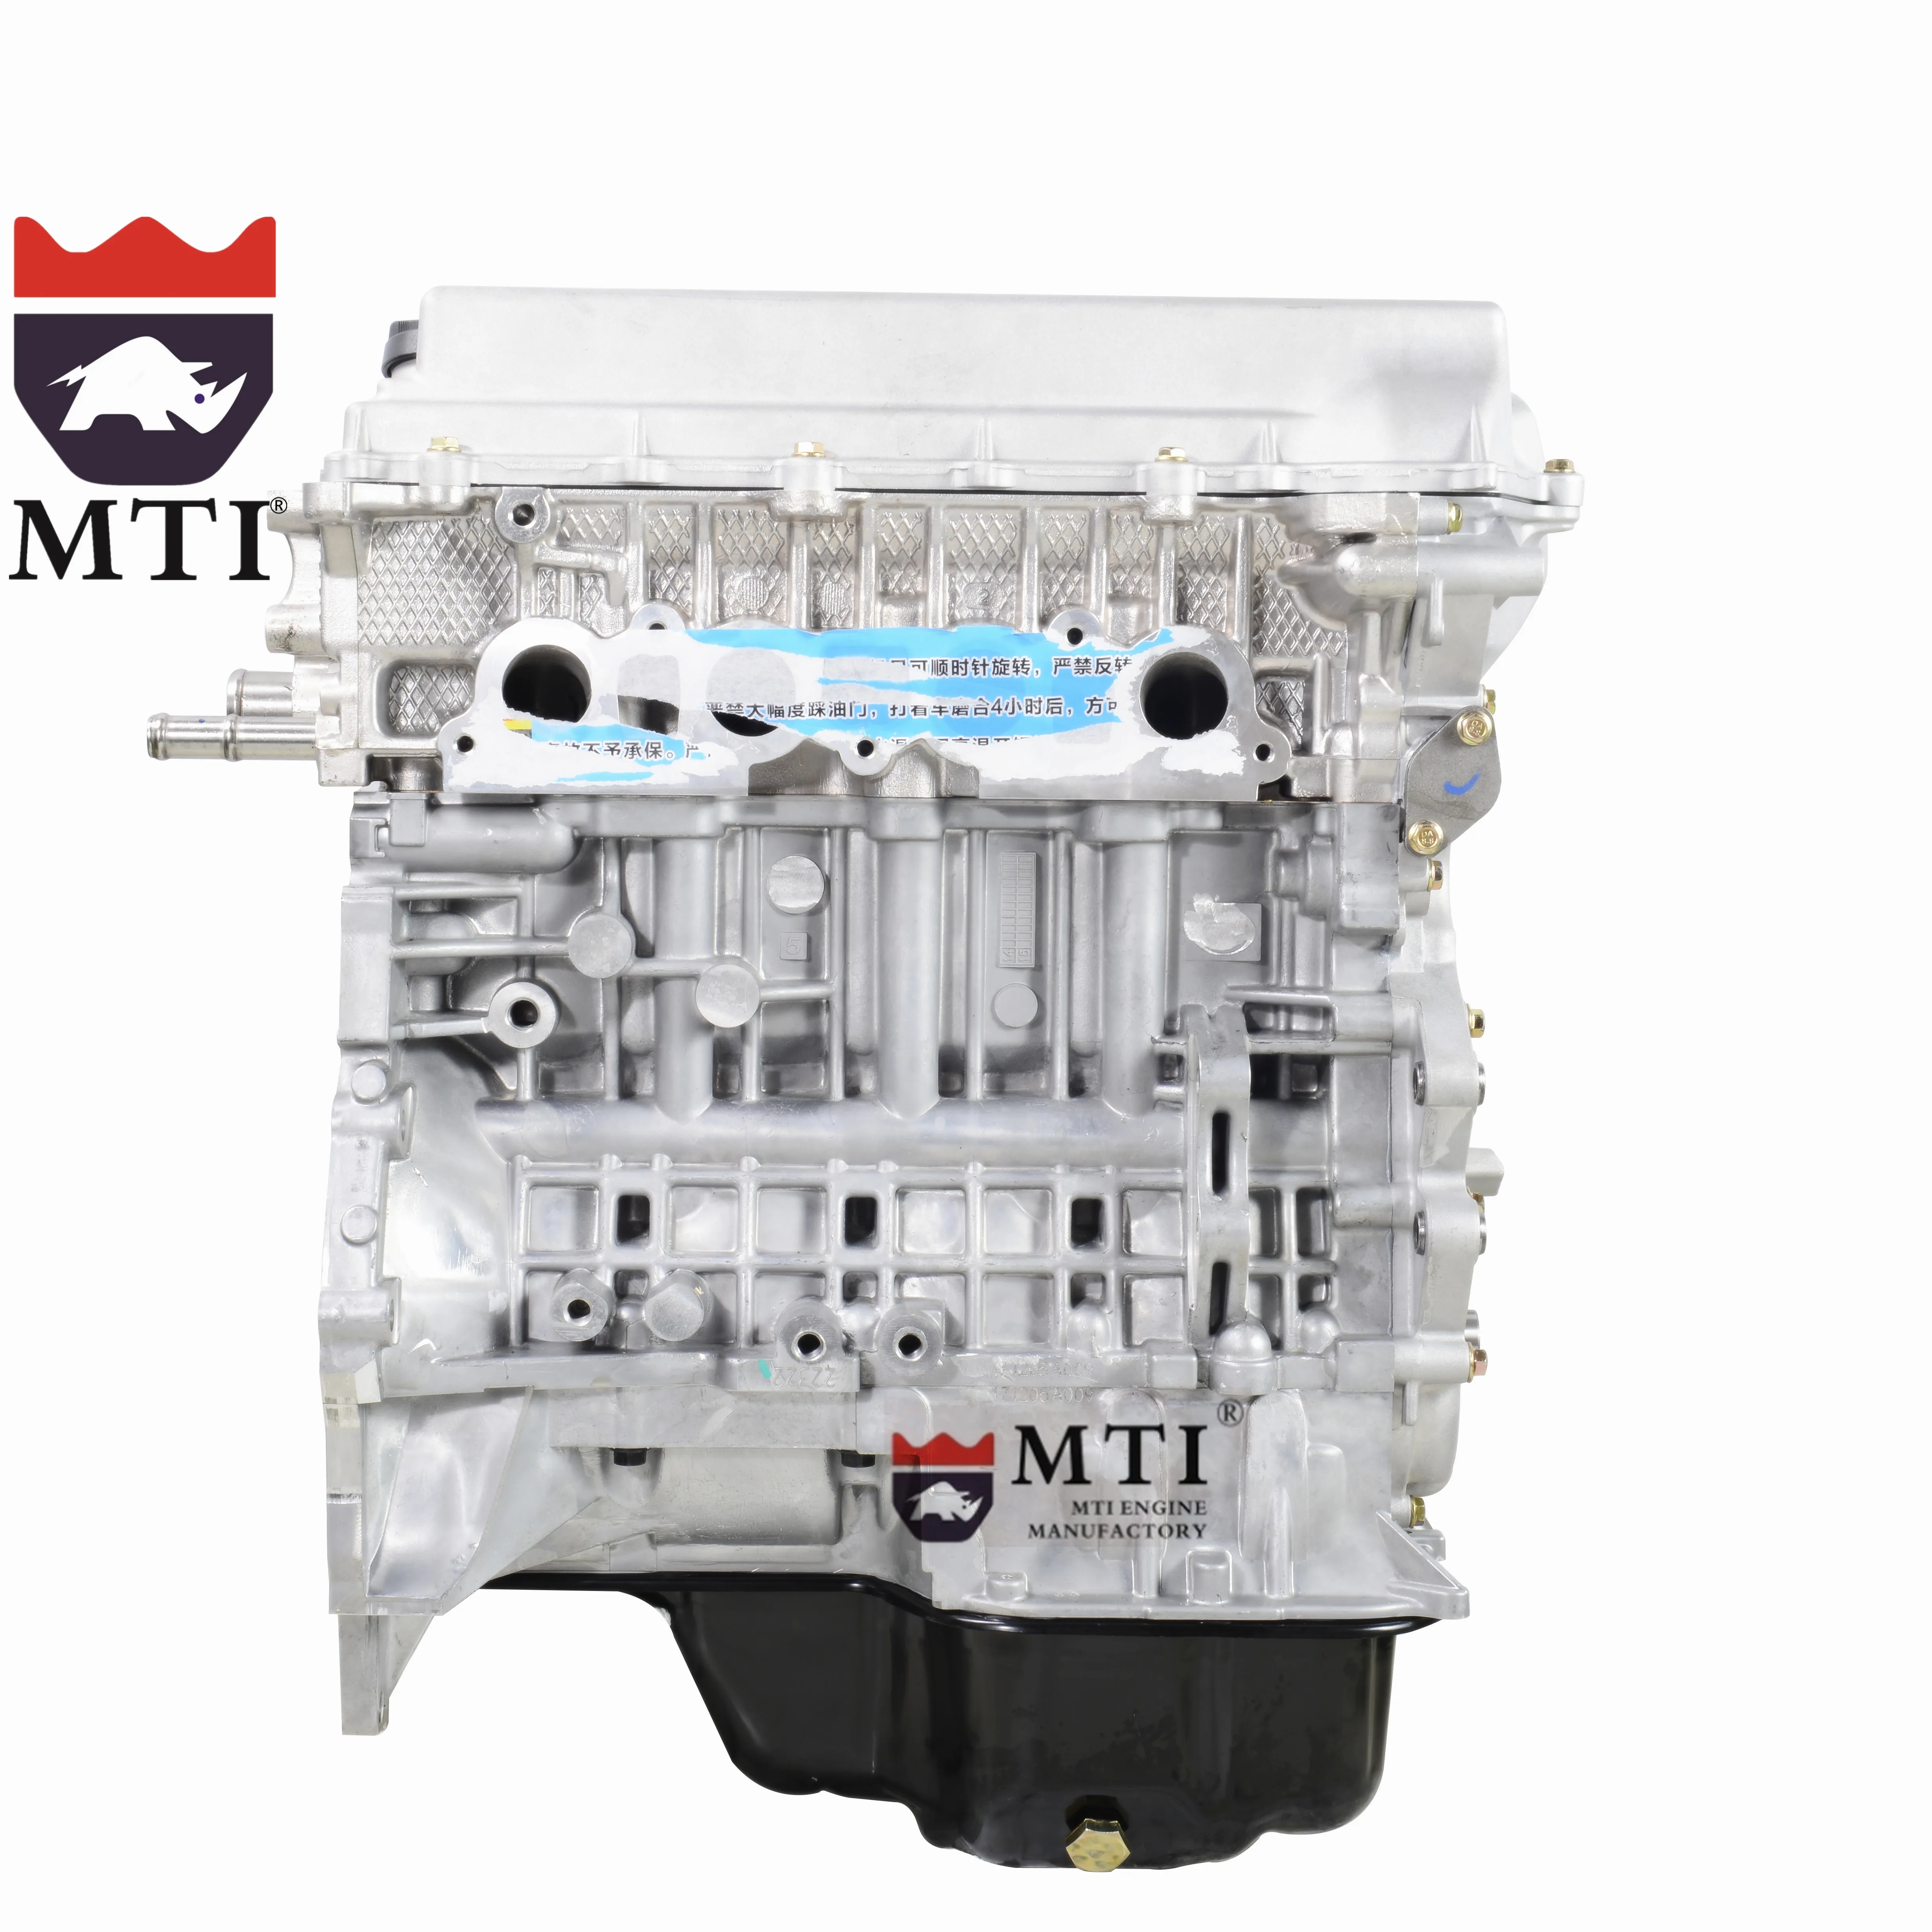 Jl c1 650. Двигатель Hyundai ix35 g4kd. Hyundai ix35 двигатель 2.0. Новый двигатель на Хендай ix35. Двигатель Киа Рио 2015 года.